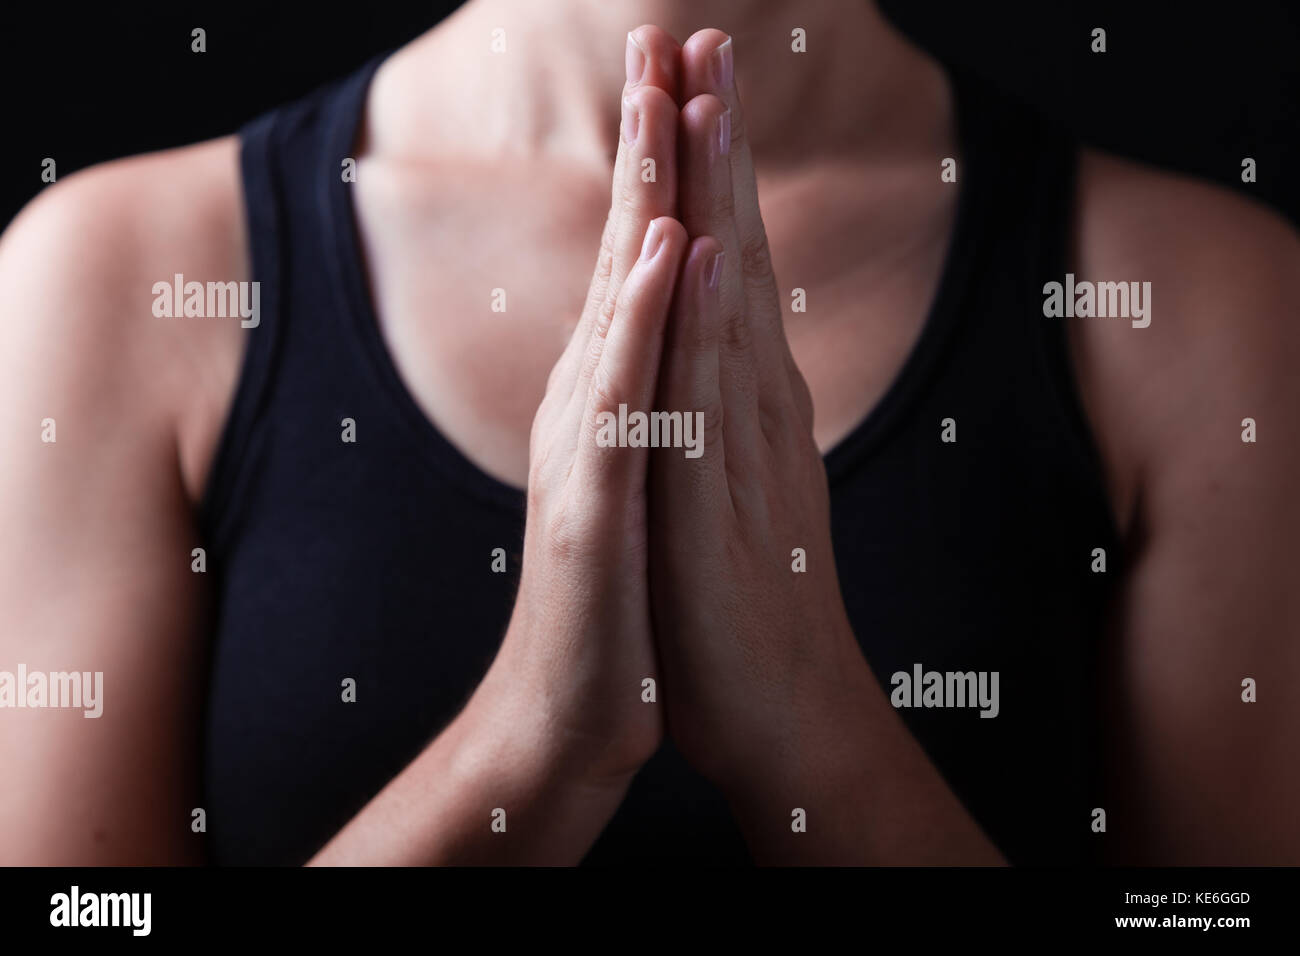 Mains d'une femme fidèle priant, les mains croisées, paumes ensemble dans l'adoration de Dieu / prier la prière fidèle close up closeup adoratrice du culte chrétien Banque D'Images